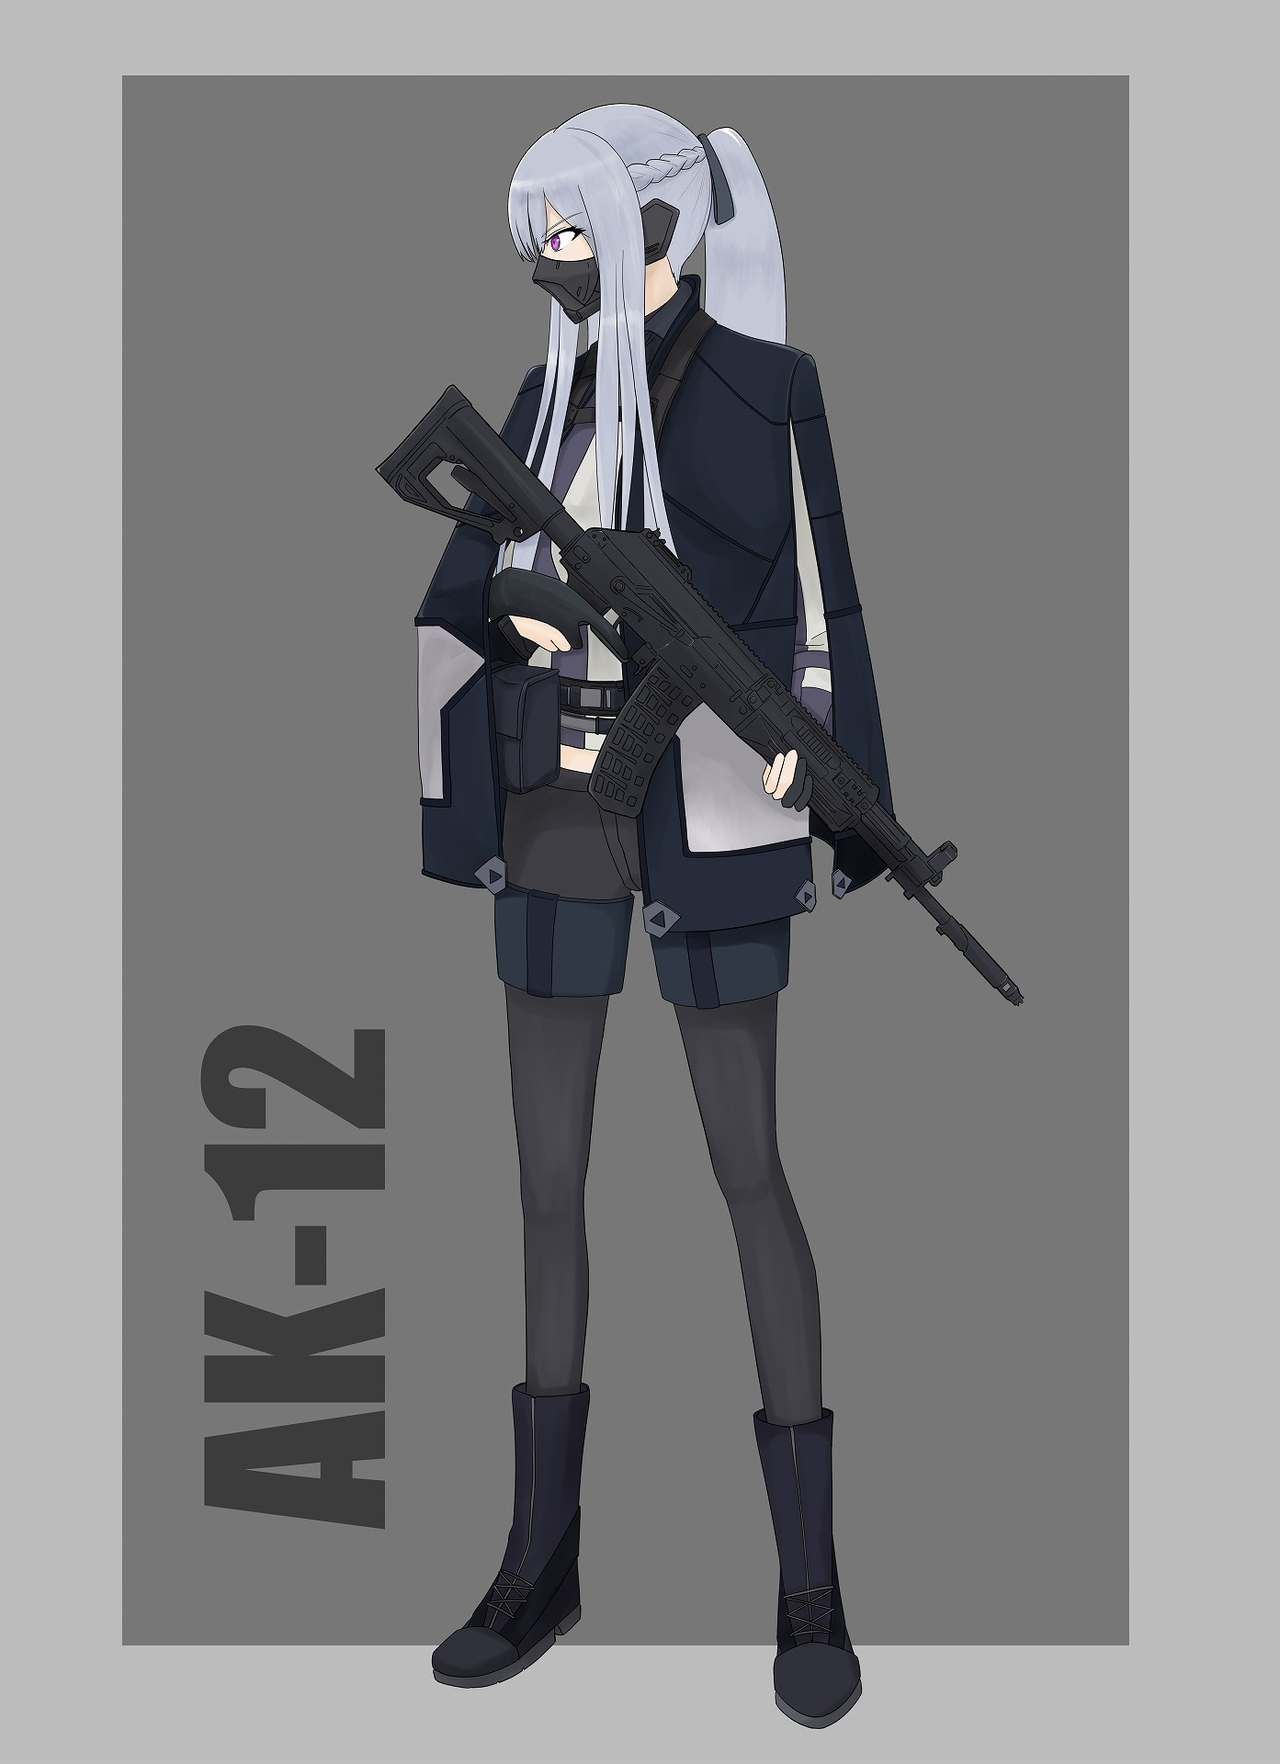 Girls' Frontline Character Fan Art Gallery - AK-12 27